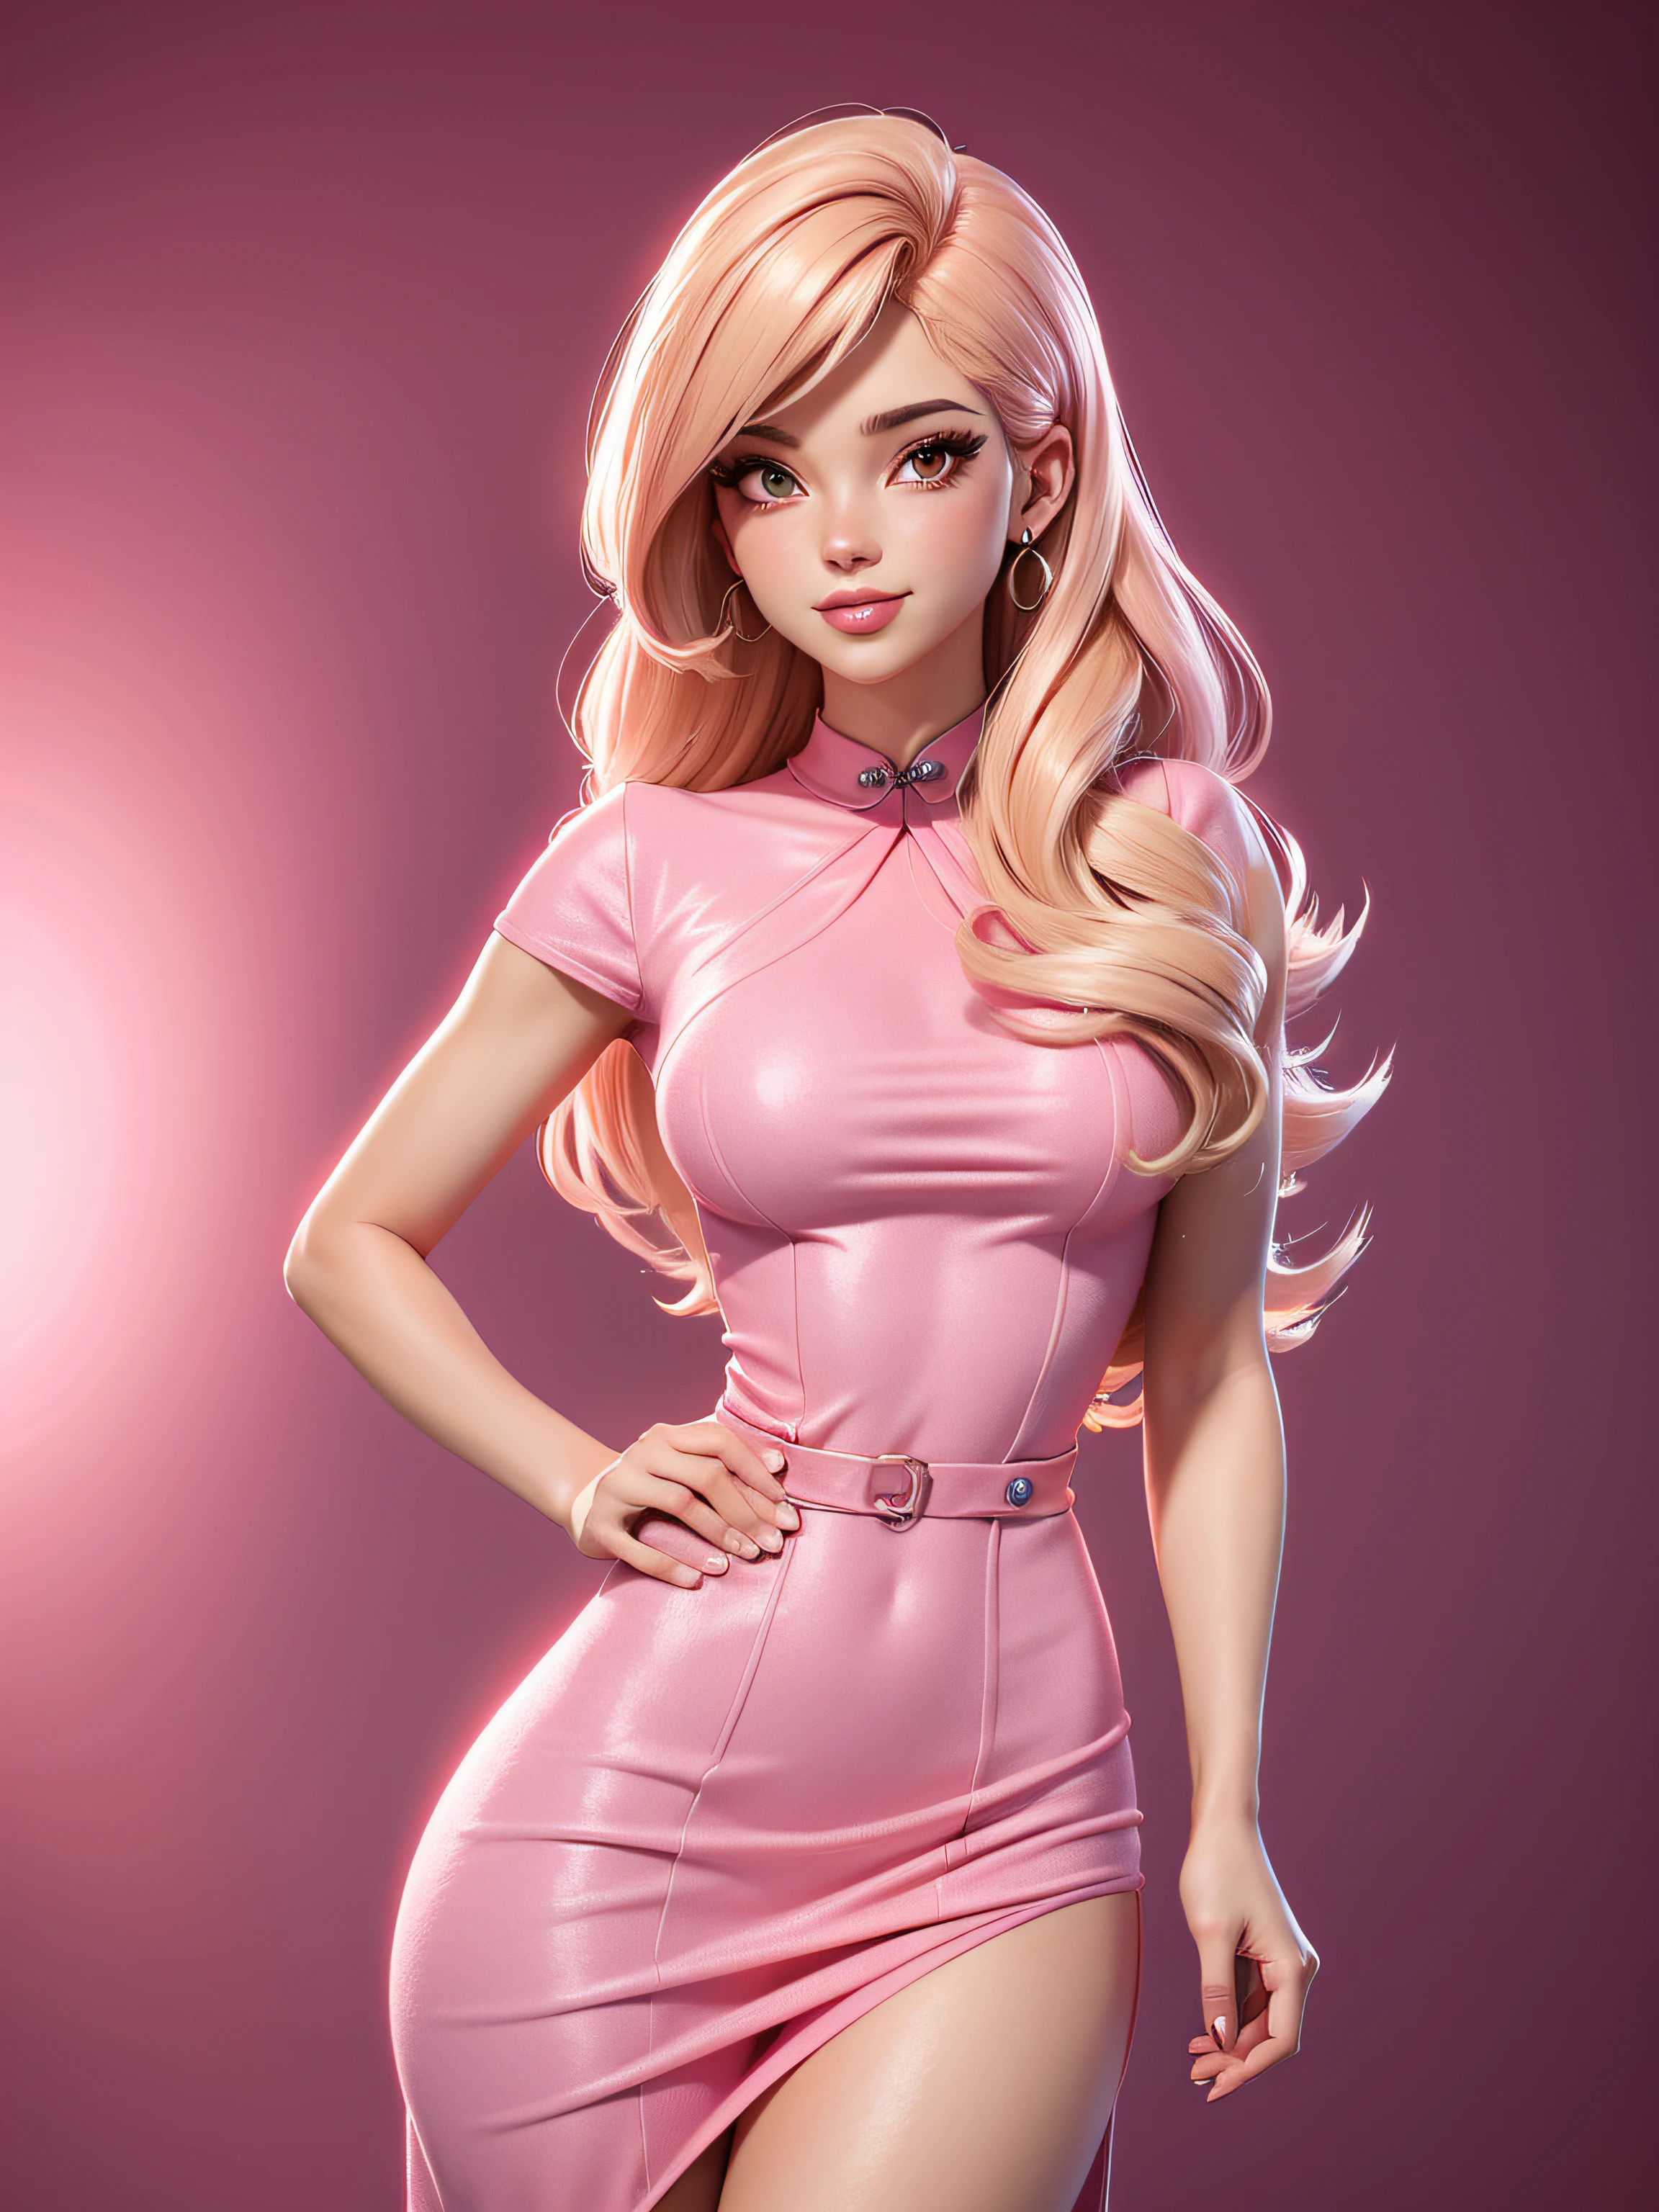  sexy cuerpo completo, vestido rosa pink, con brillo, pelo rubio, mirada llamativa, estilo de dibujos animados de los años 50, imagen vectorial, sin antecedentes, estilo de imágenes prediseñadas